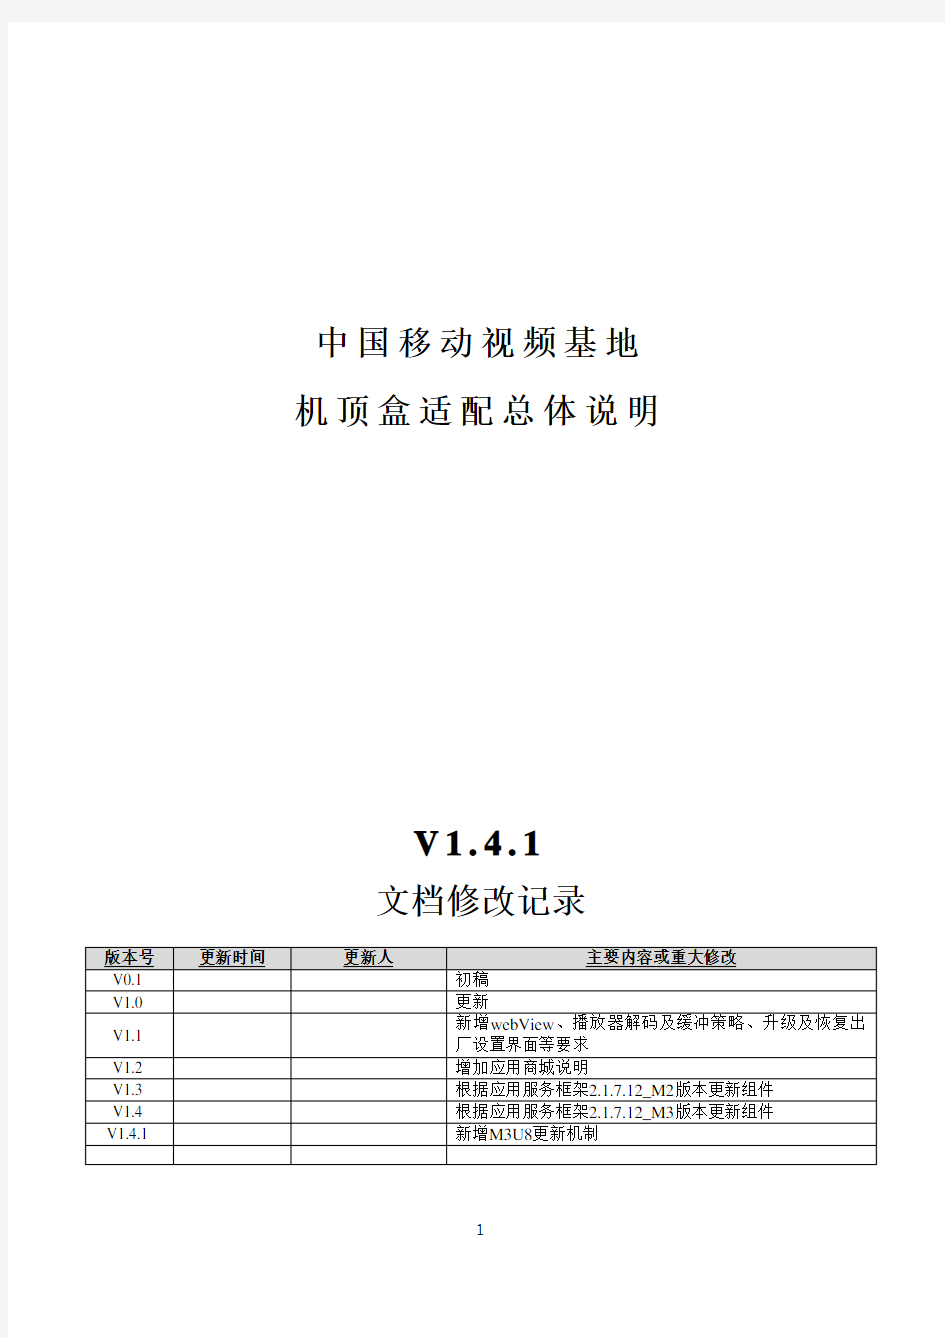 中国移动视频基地机顶盒适配总体说明_V1.4.1